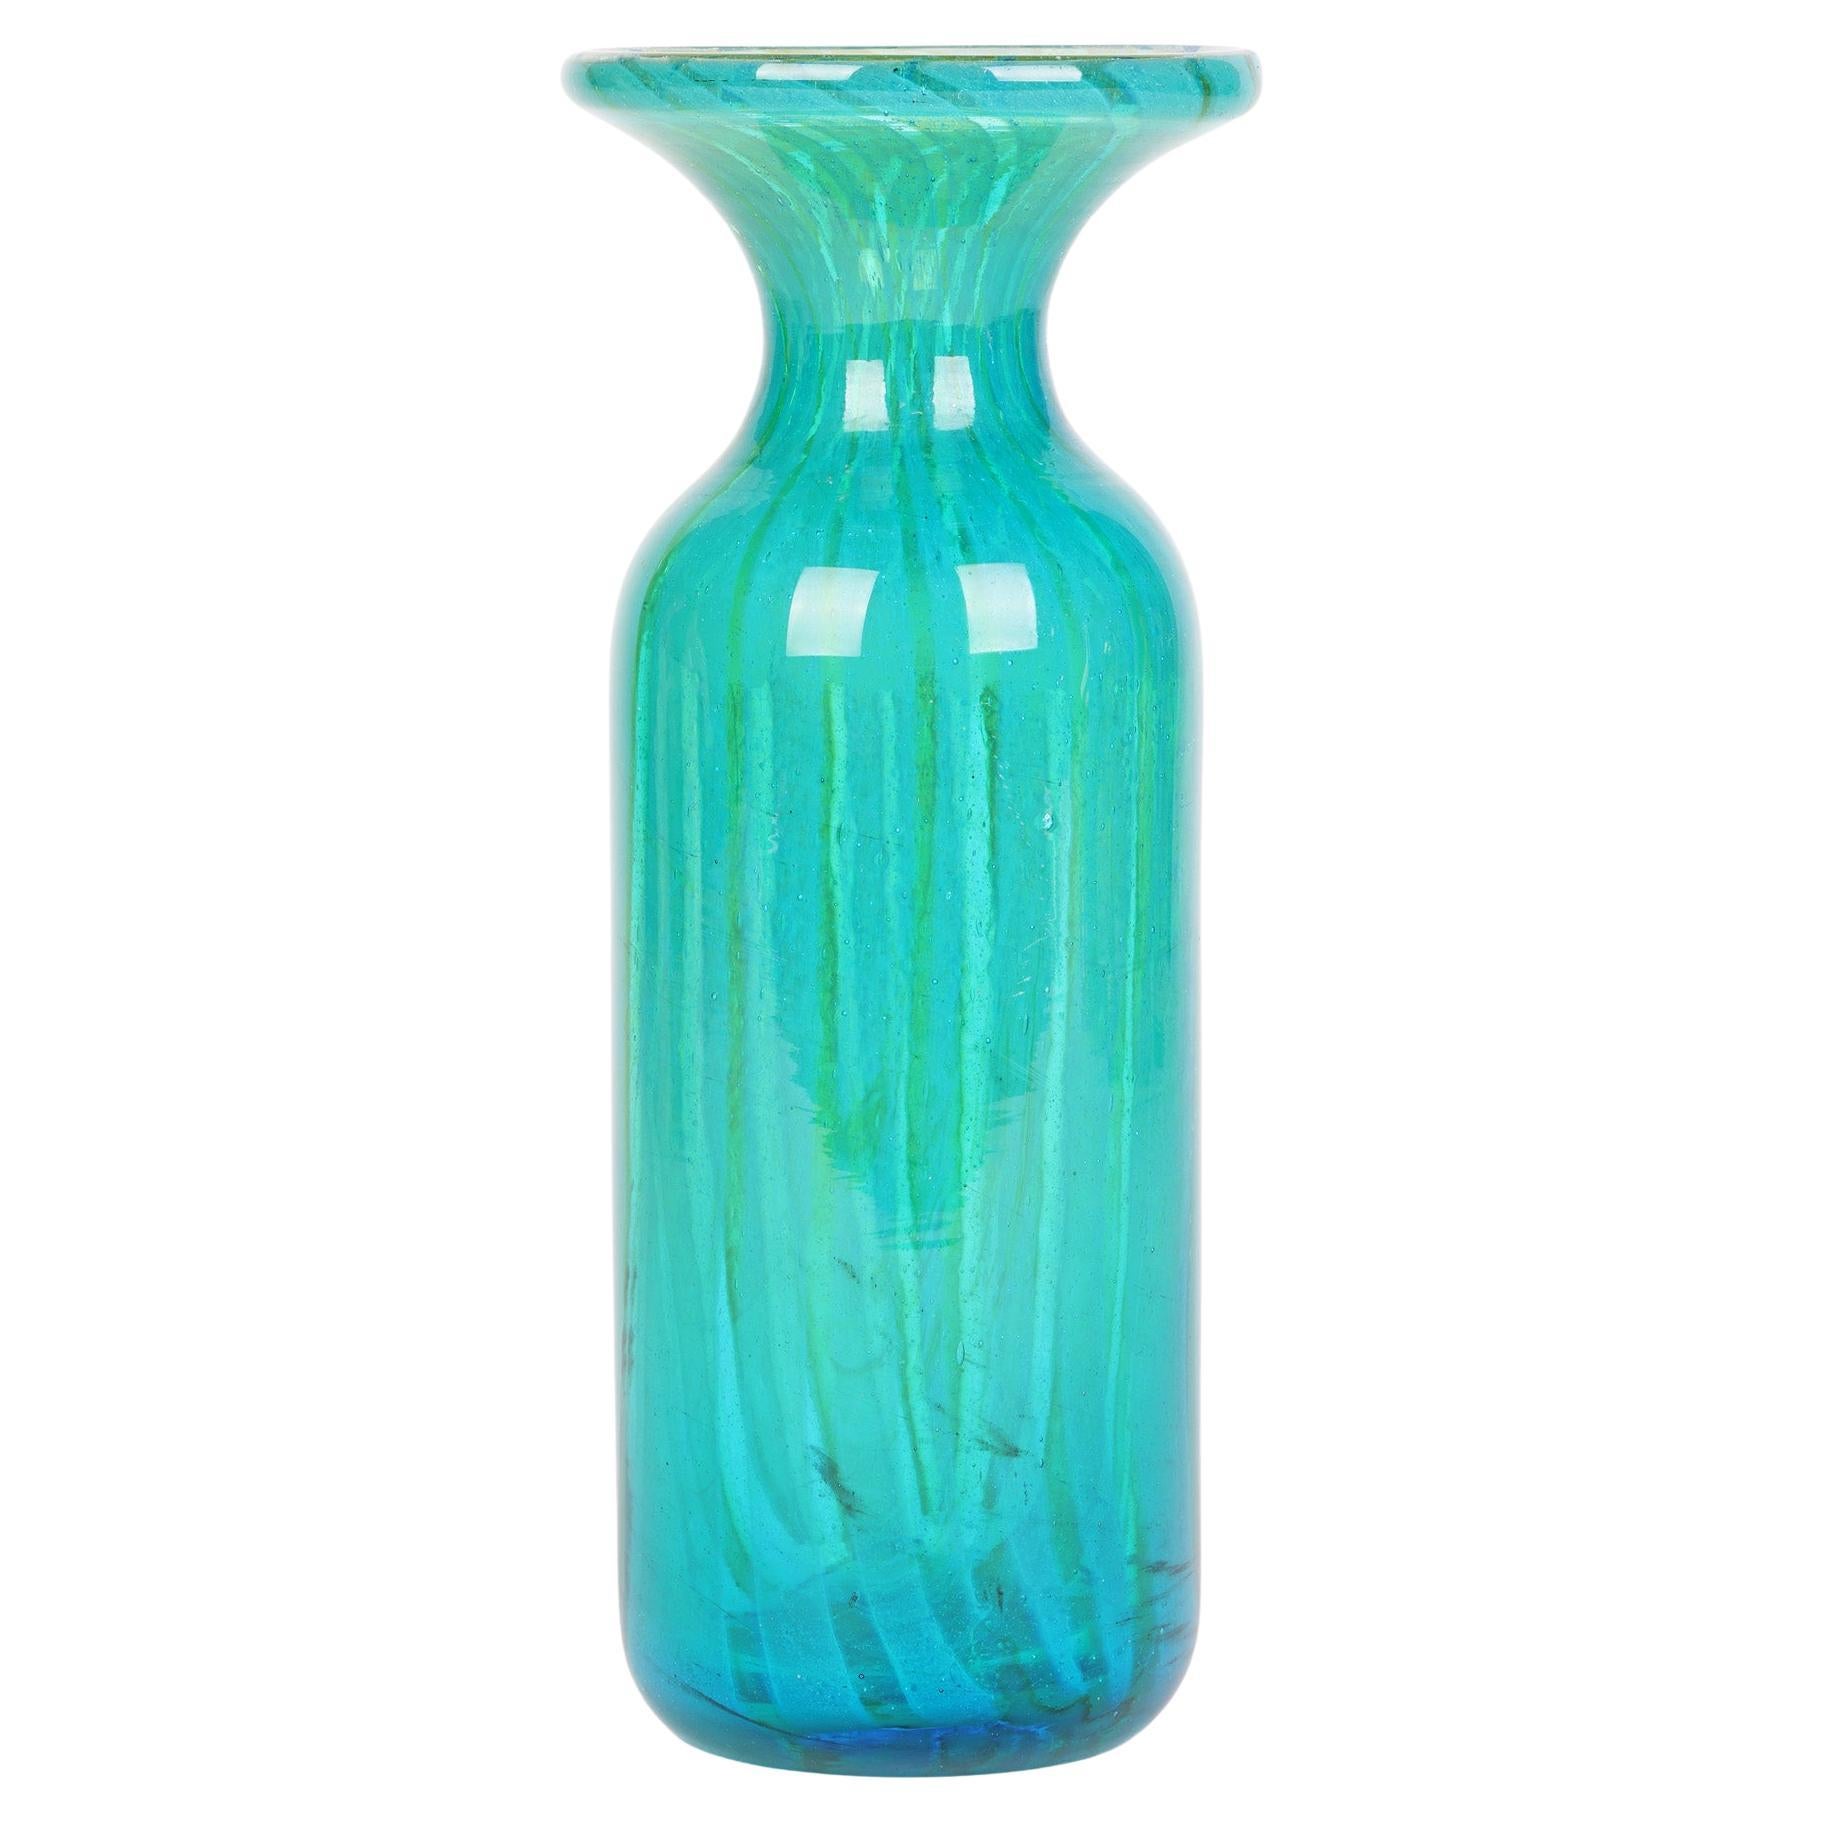 Mdina Maltese Art Glass Sand Streaked Blue Art Glass Vase